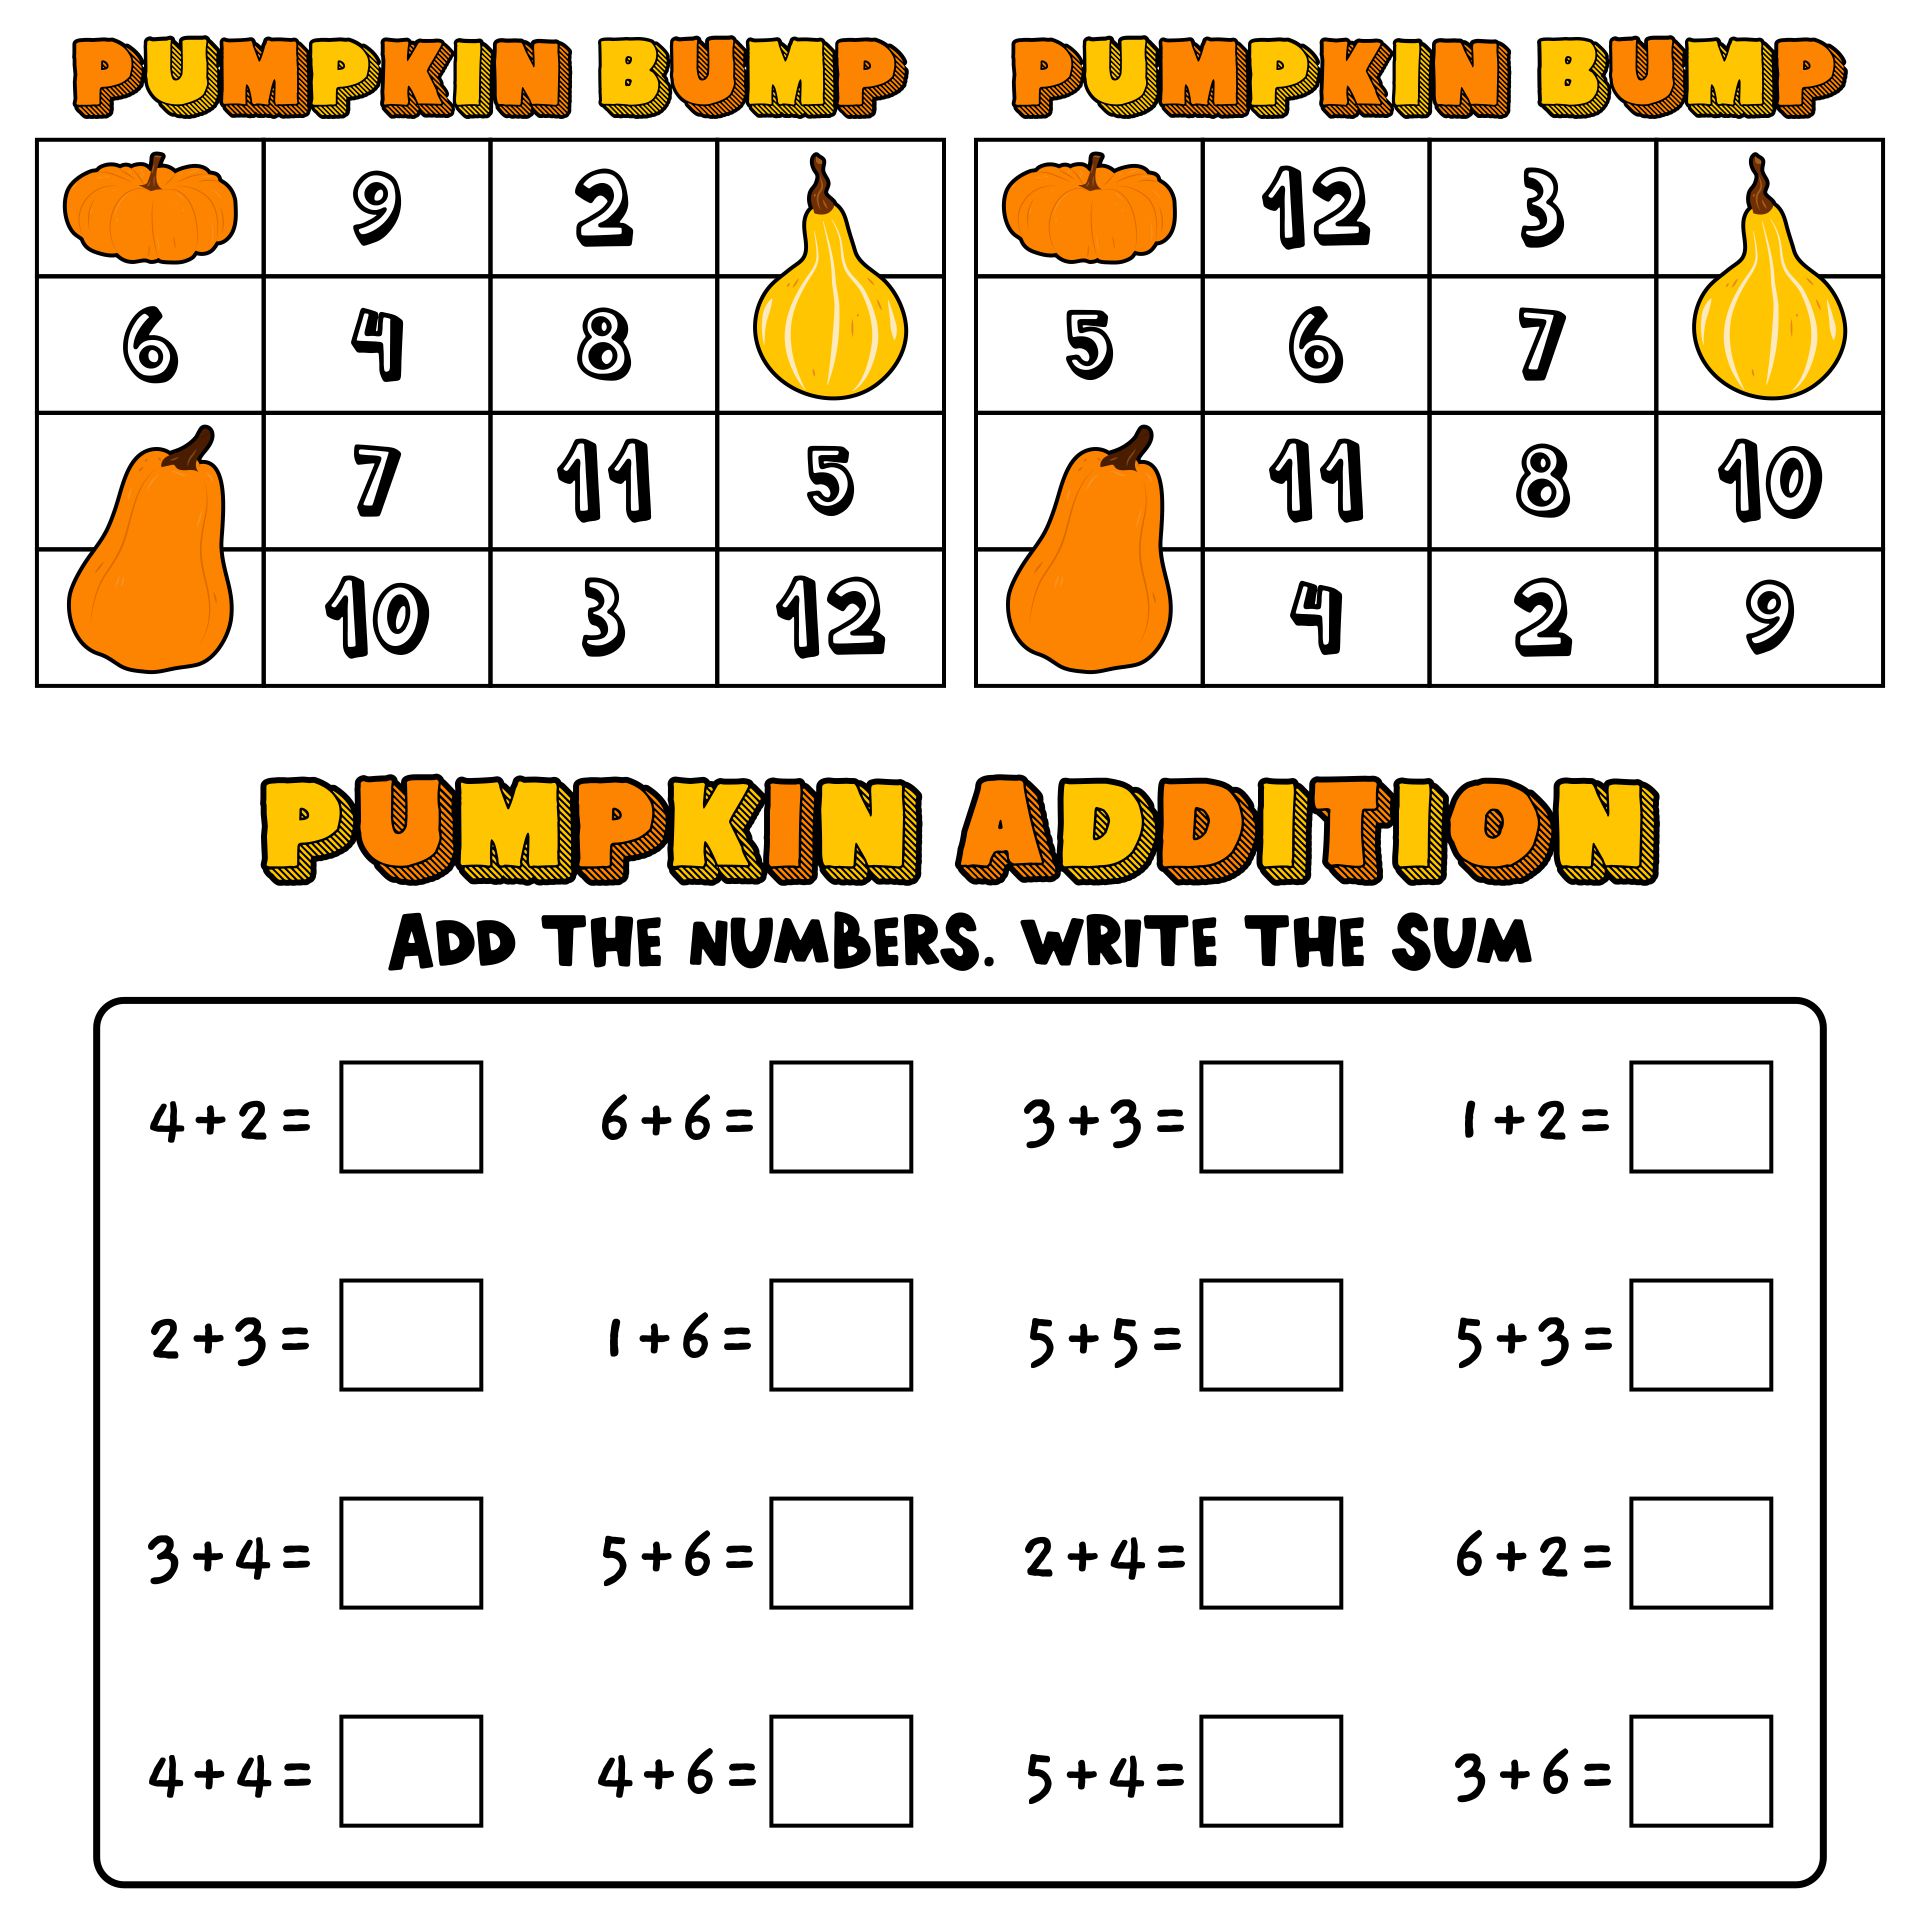 Pumpkin Math Bump Game Printables